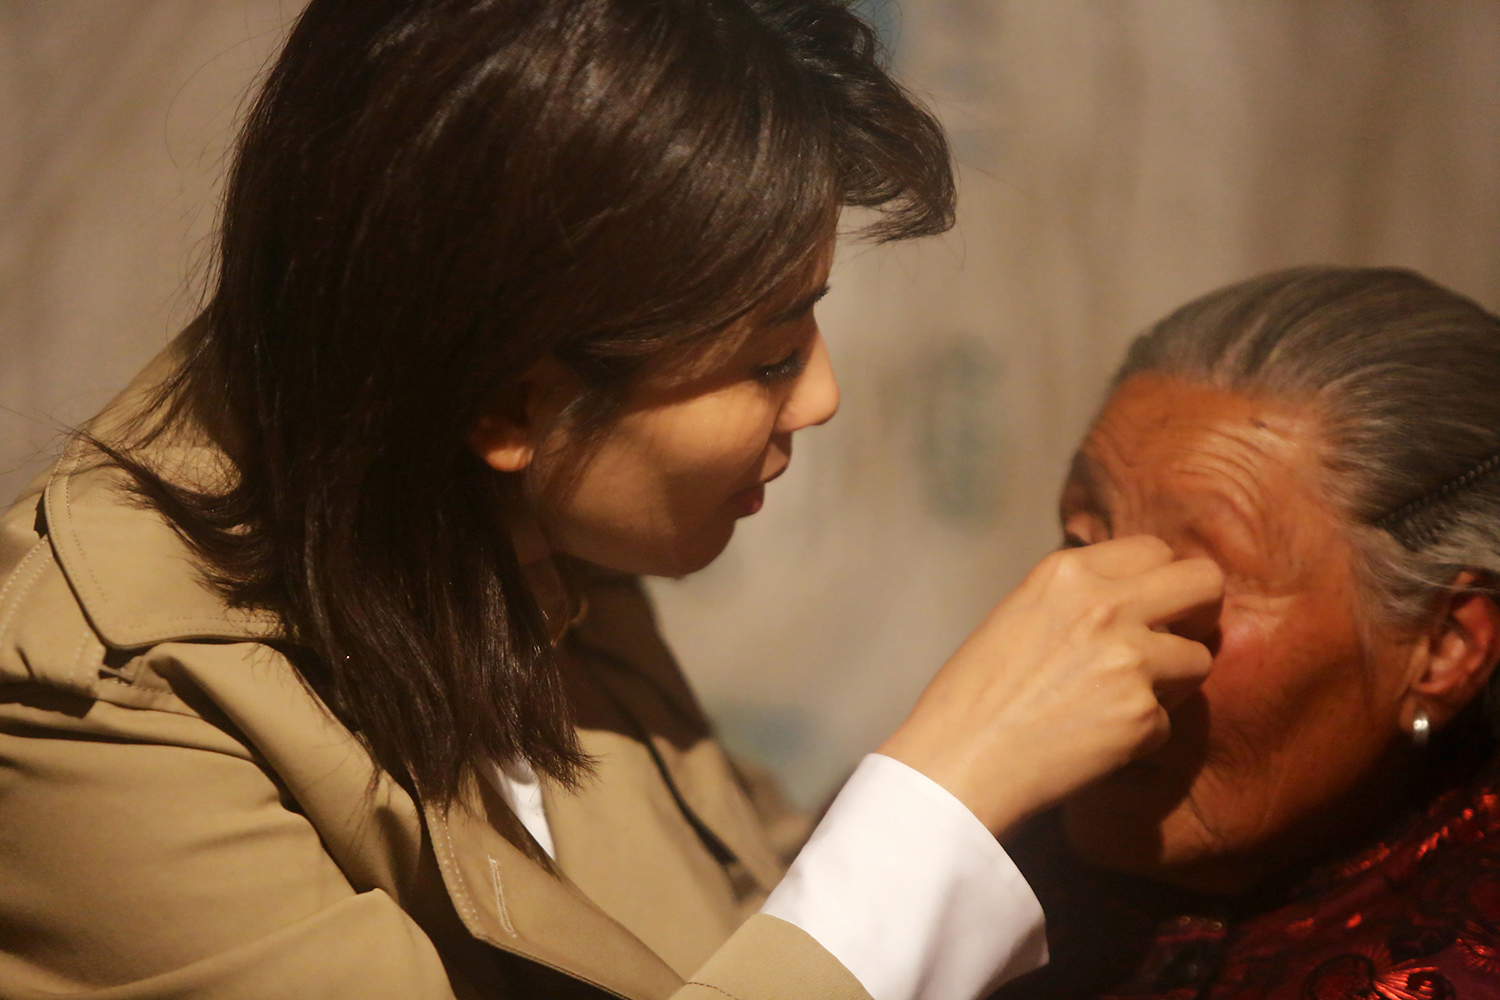 《熟悉的味道2》收官 刘涛与91岁奶奶相拥而泣